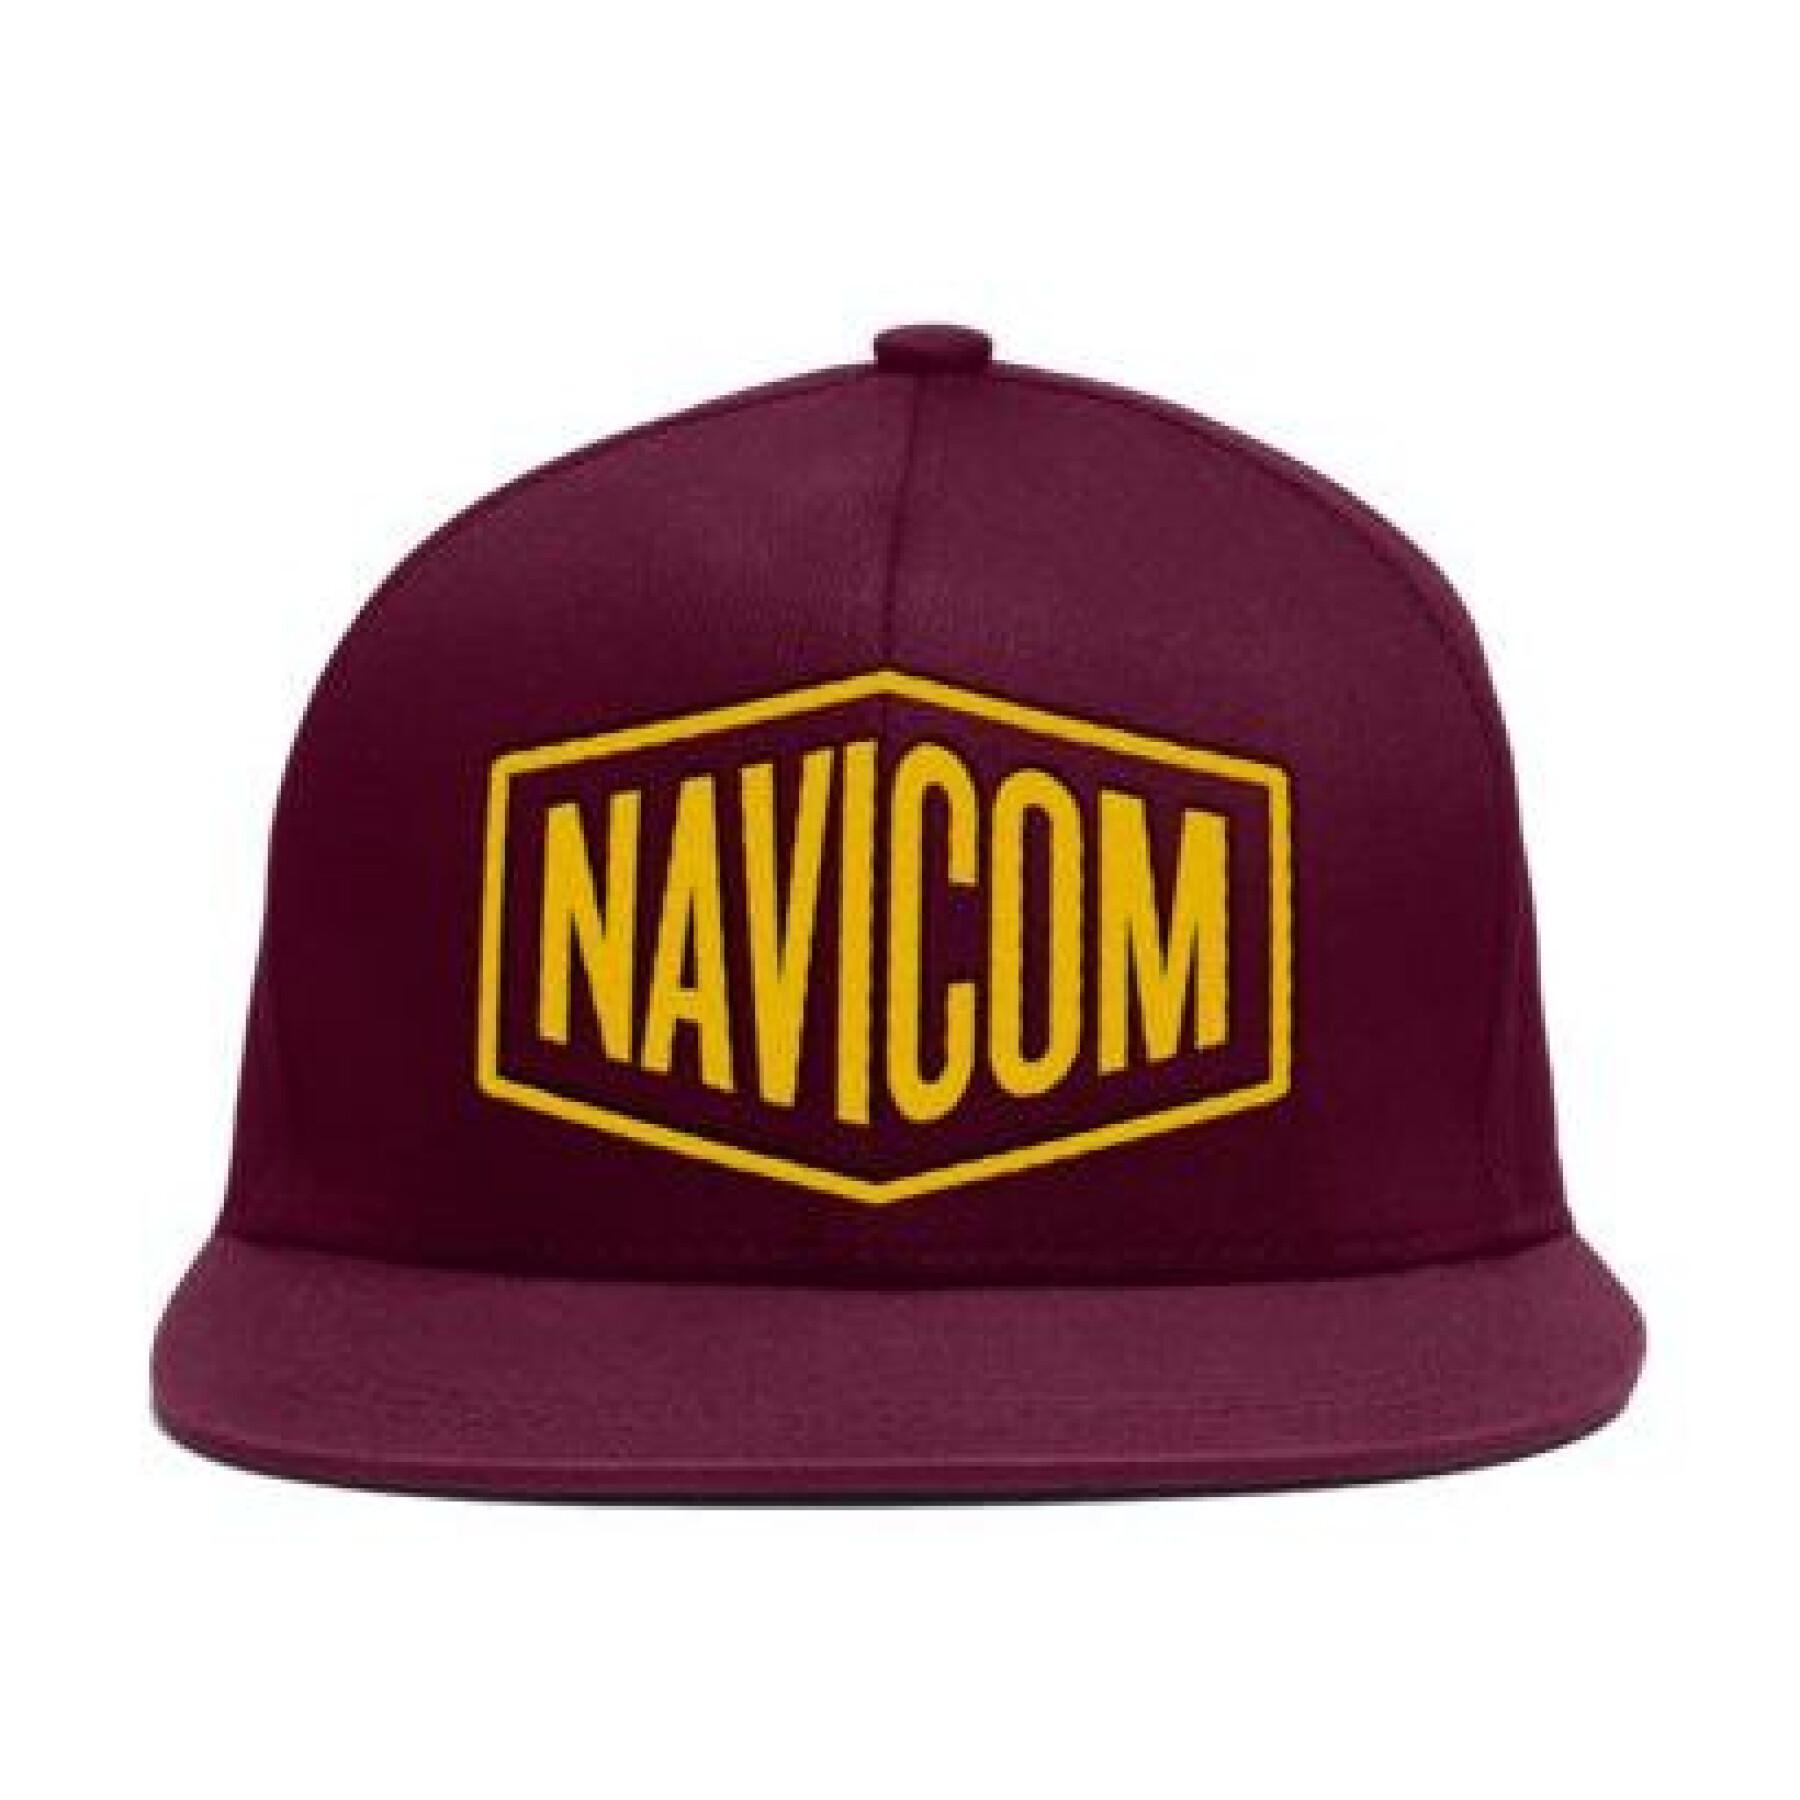 Gorra oficial - sólo en venta Navicom